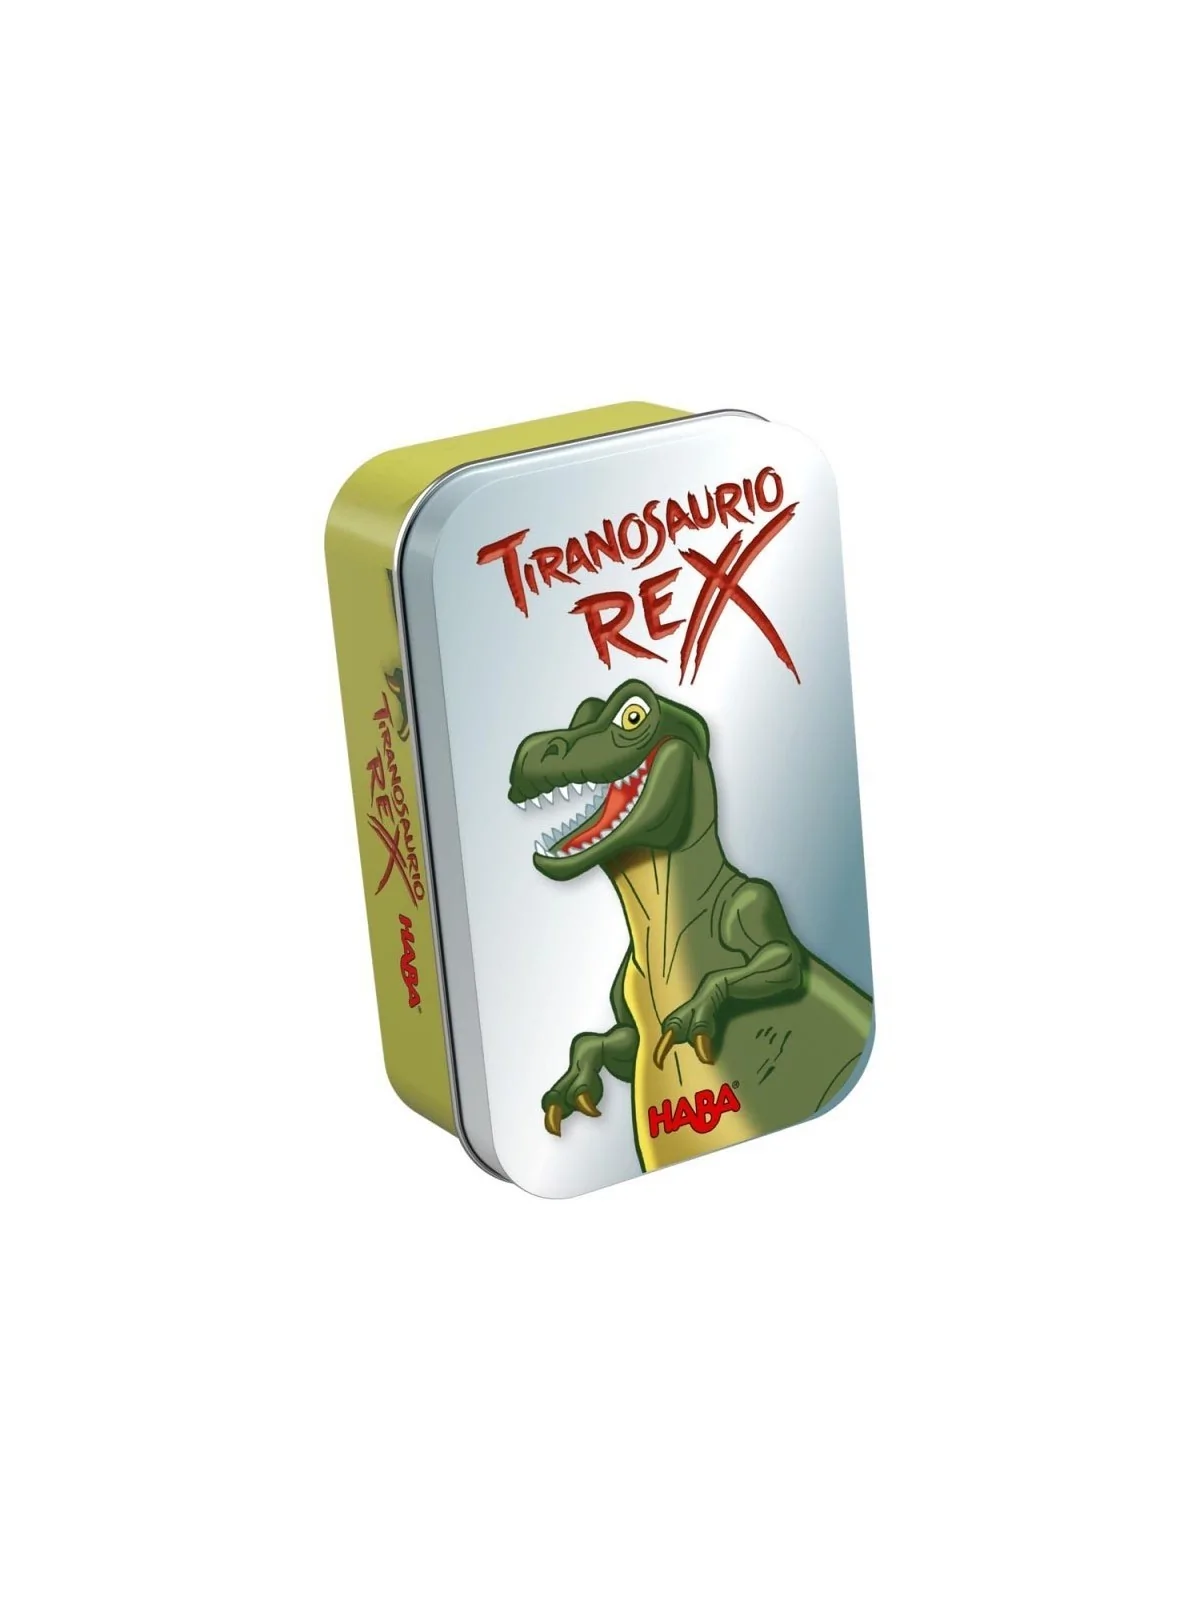 Comprar Tiranosaurio Rex barato al mejor precio 5,45 € de Haba